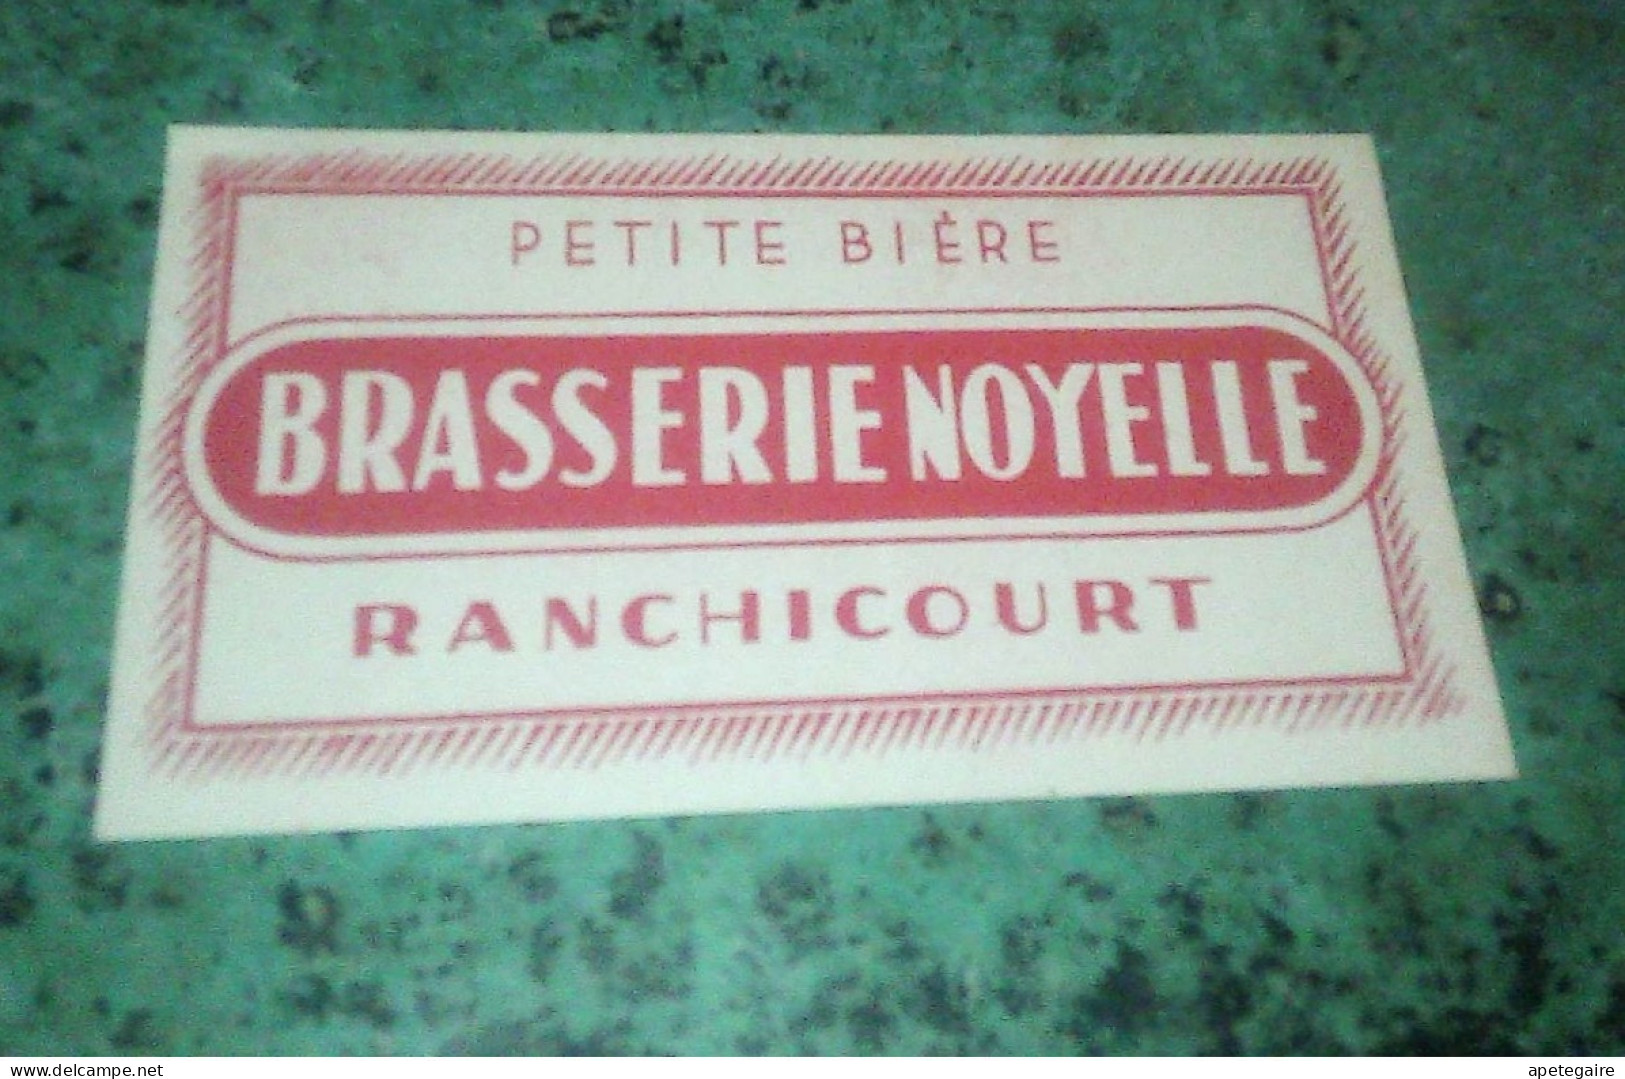 Ranchicourt  Brasserie  Noyelle.  Ancienne étiquette De Bière  Petite Bière - Cerveza